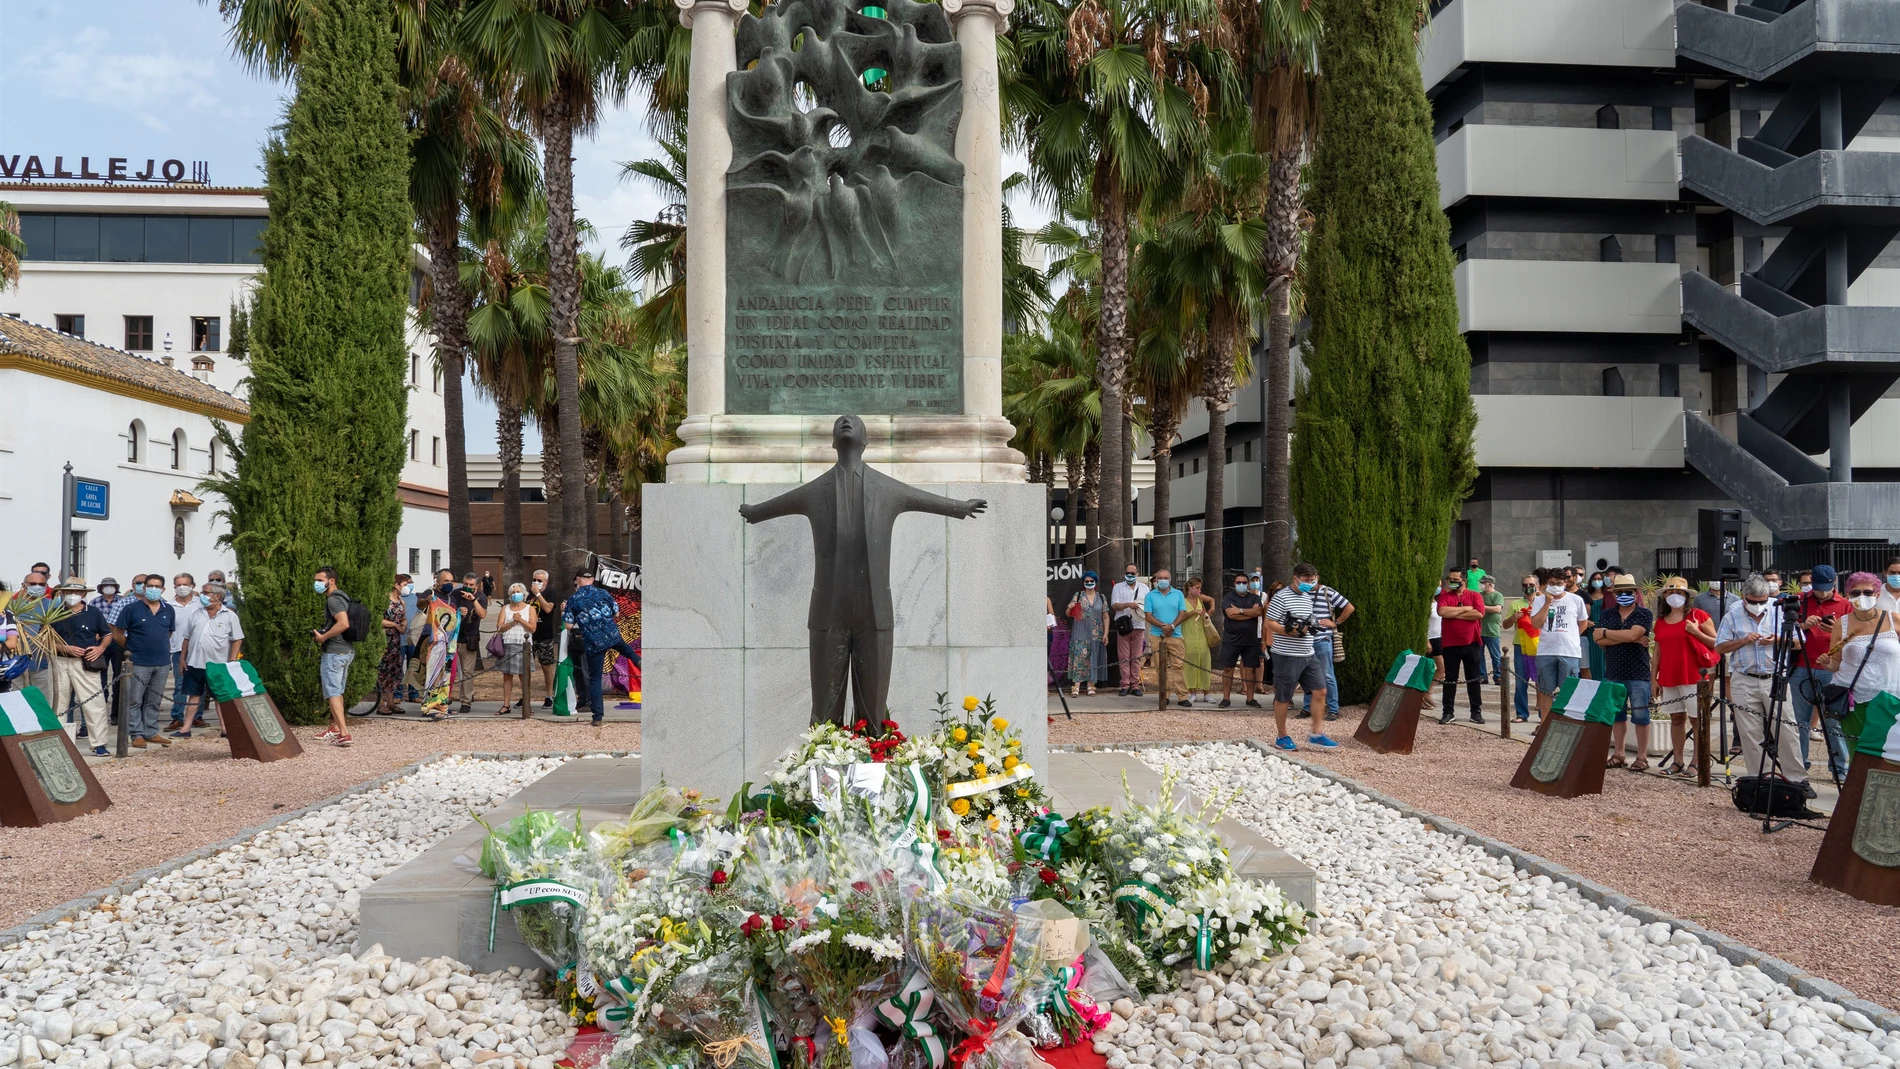 Los partidos andaluces salvo Vox recuerdan el asesinato de Blas Infante con alusiones a su legado y la memoria histórica